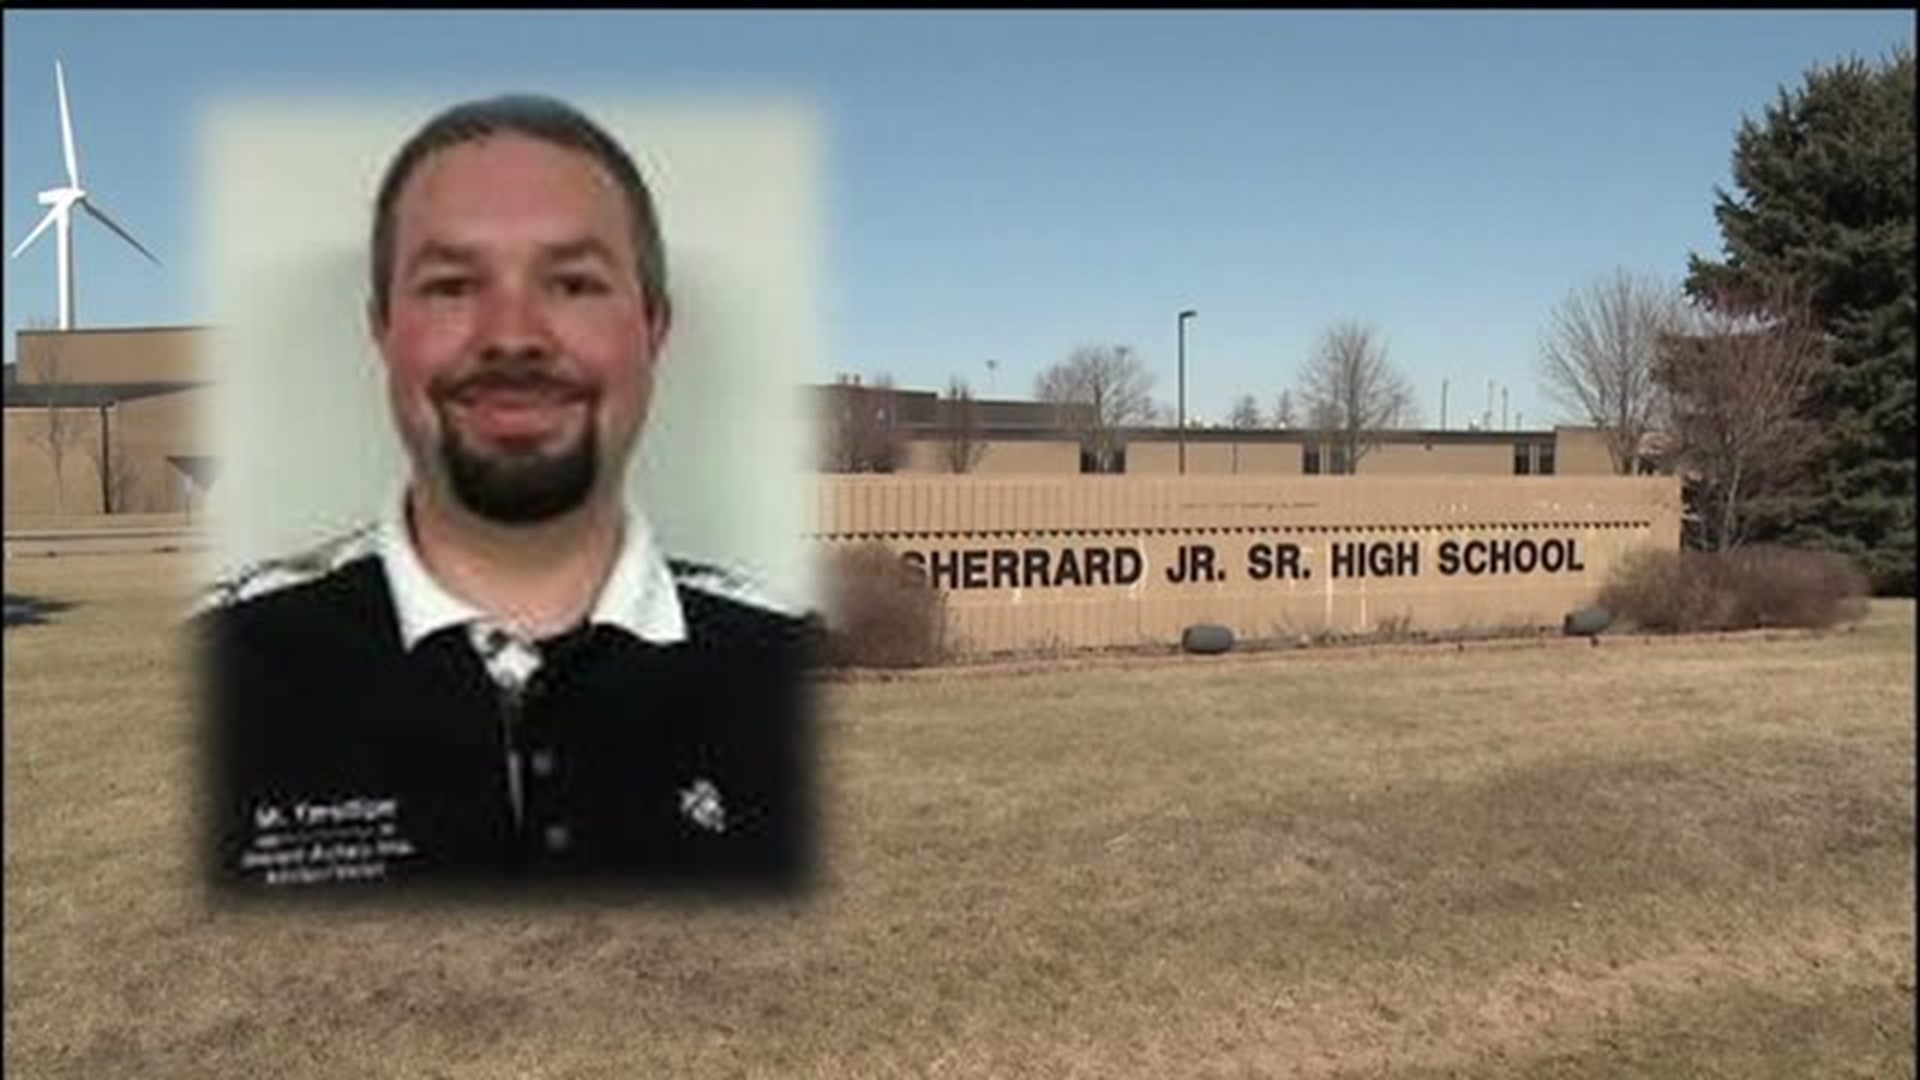 Investigation underway into allegations against Sherrard teacher